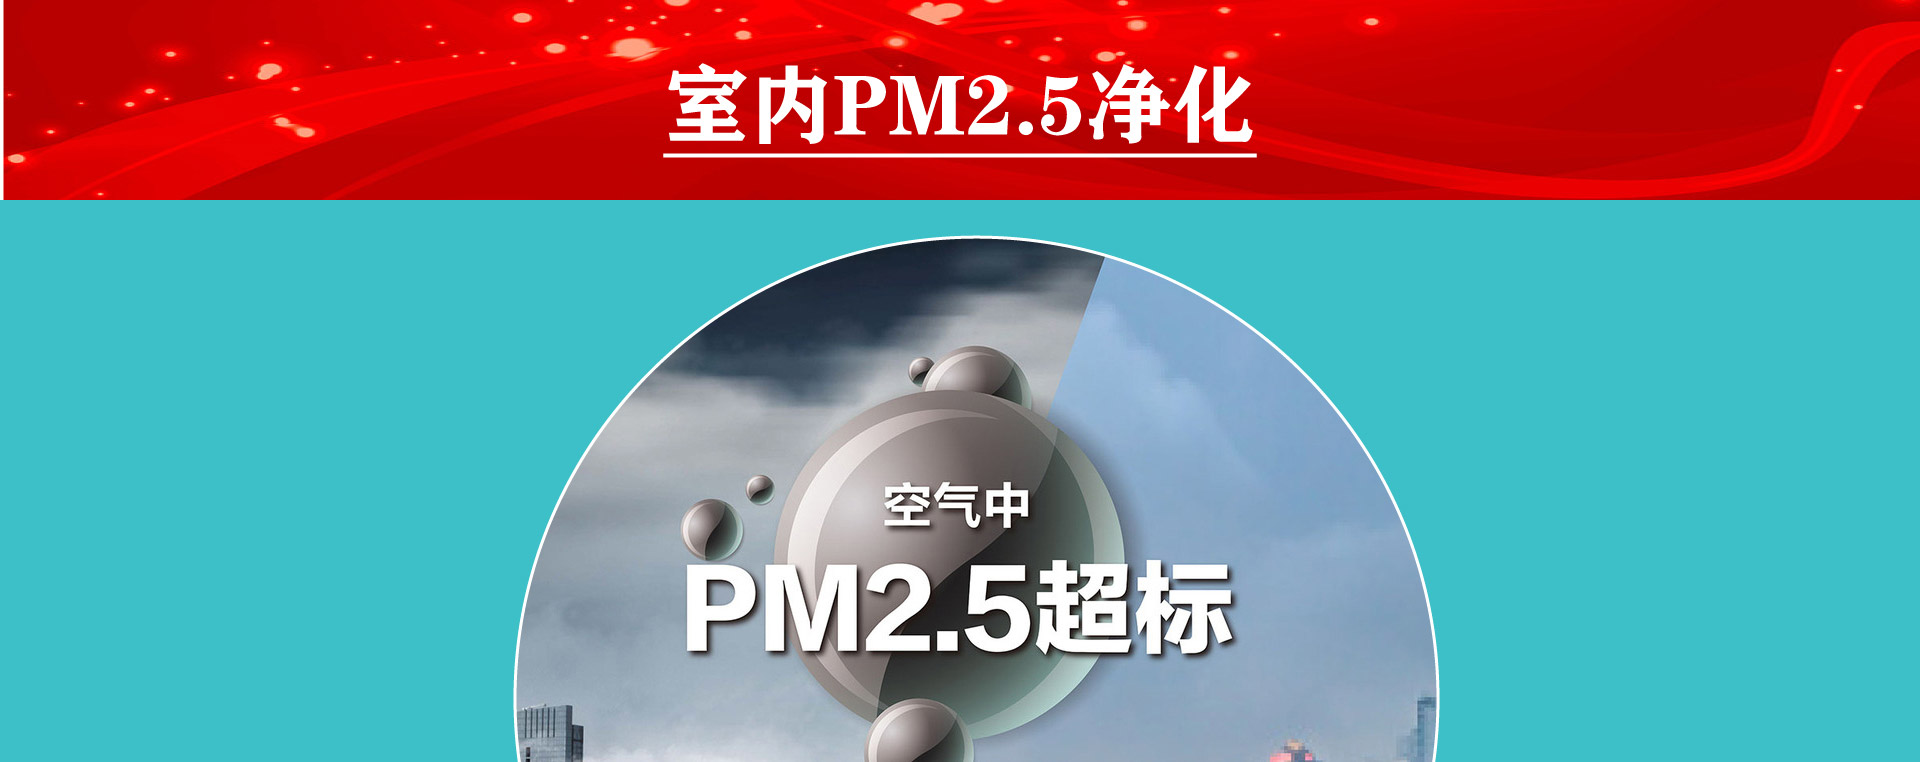 中央空调PM2.5室内空气净化服务介绍1-专业去除室内PM2.5。